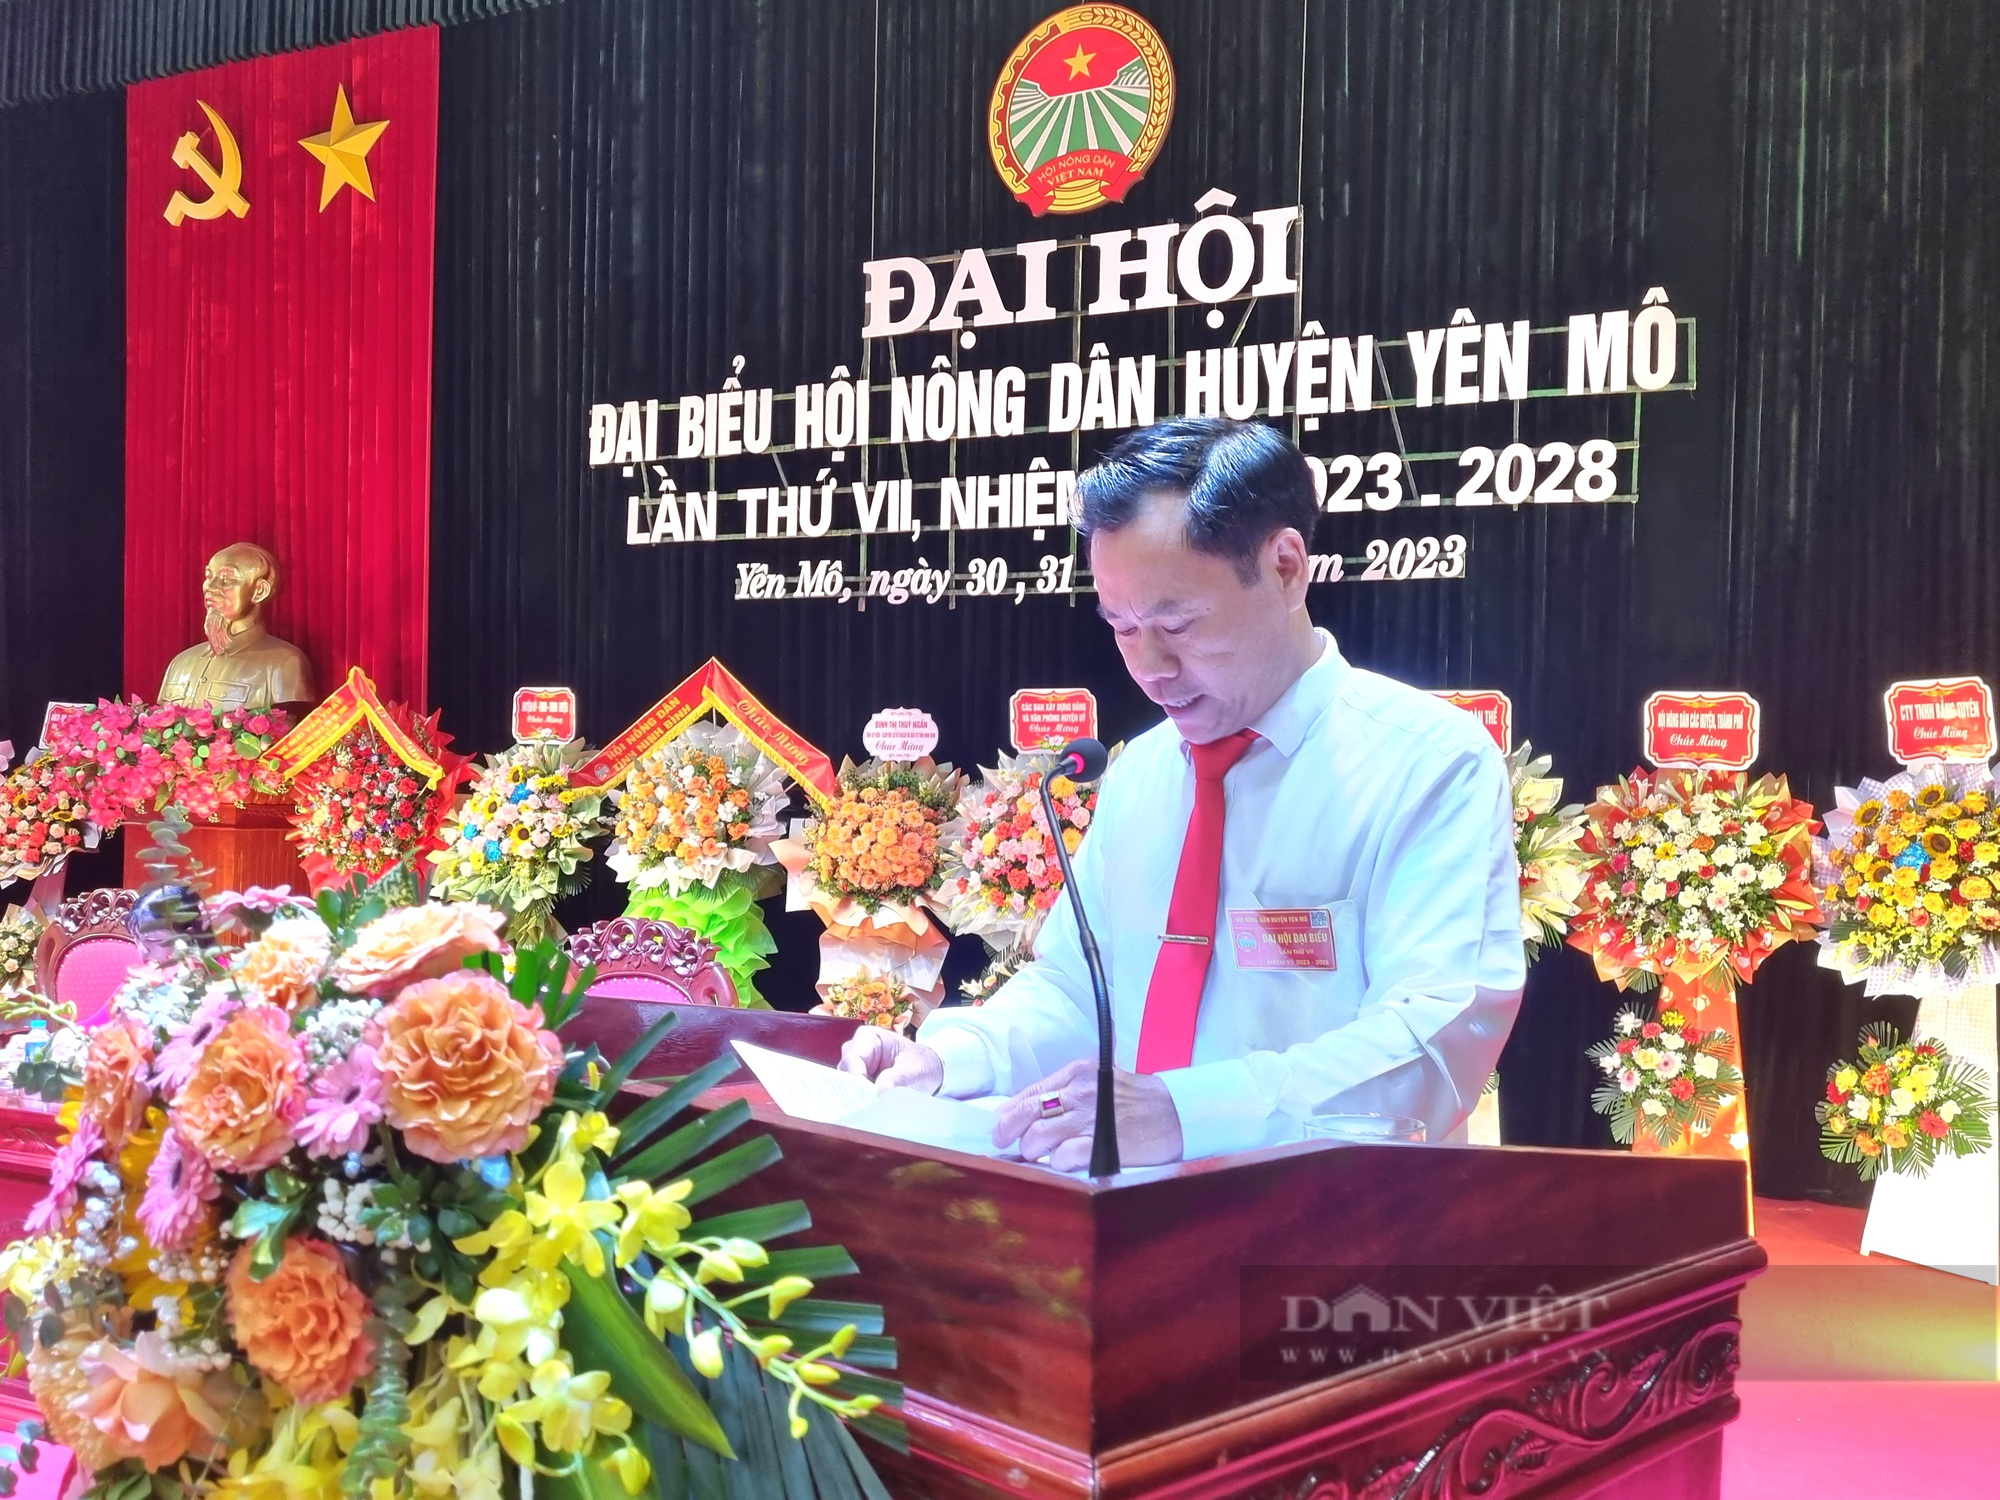 Ninh Bình: Ông Lê Anh Tuấn tái đắc cử Chủ tịch Hội Nông dân huyện Yên Mô - Ảnh 7.